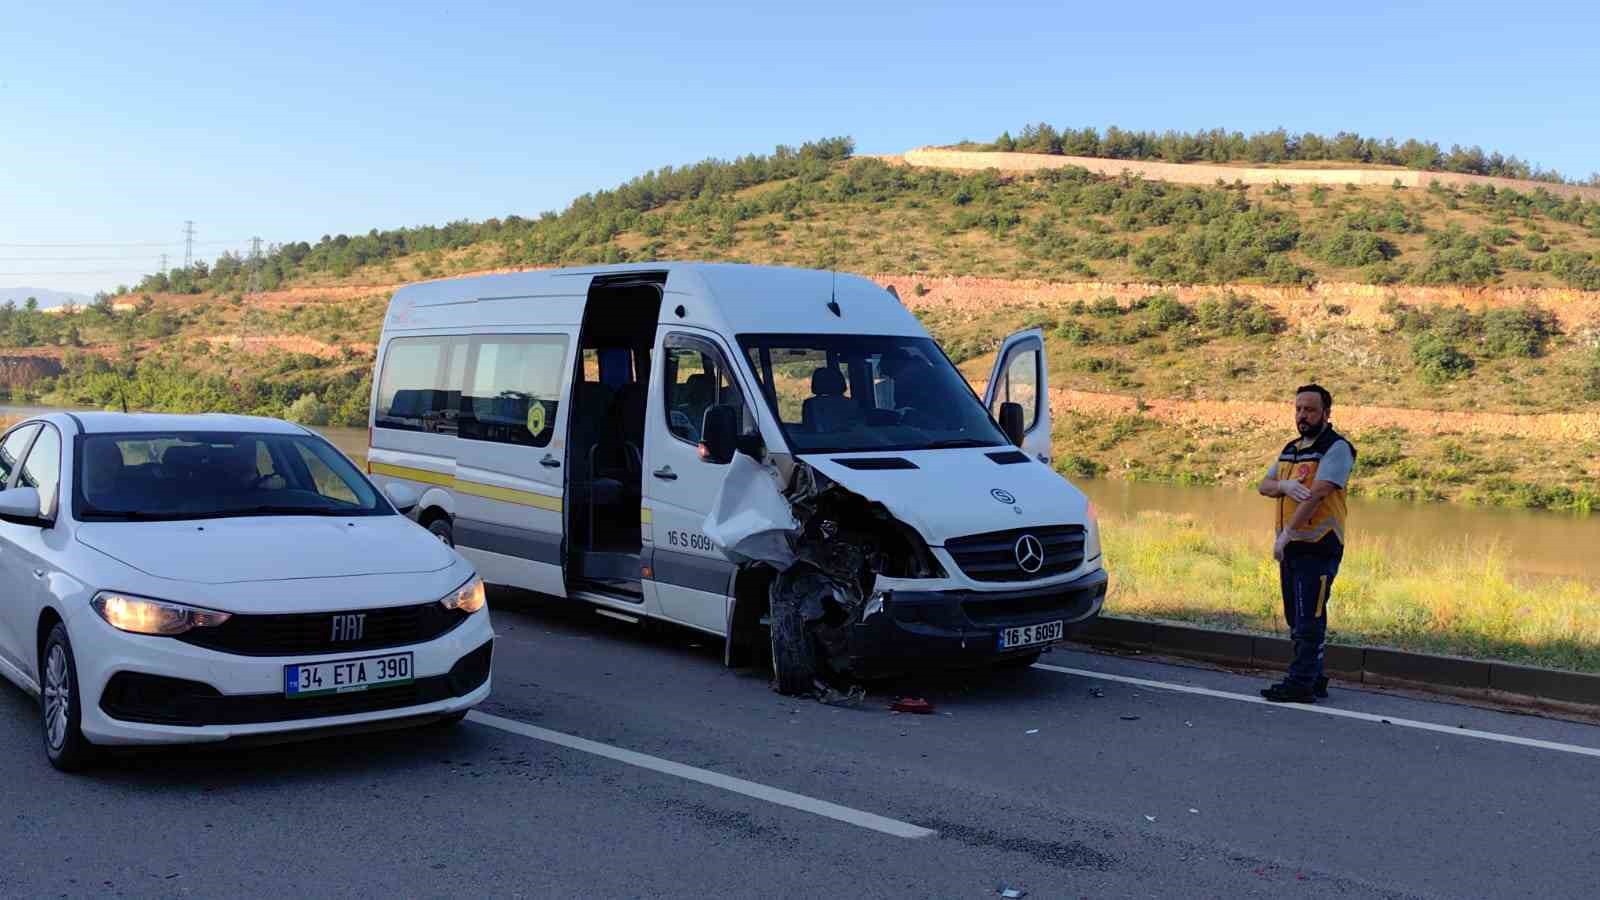 Servis minibüsü otomobile çarptı: 4 yaralı